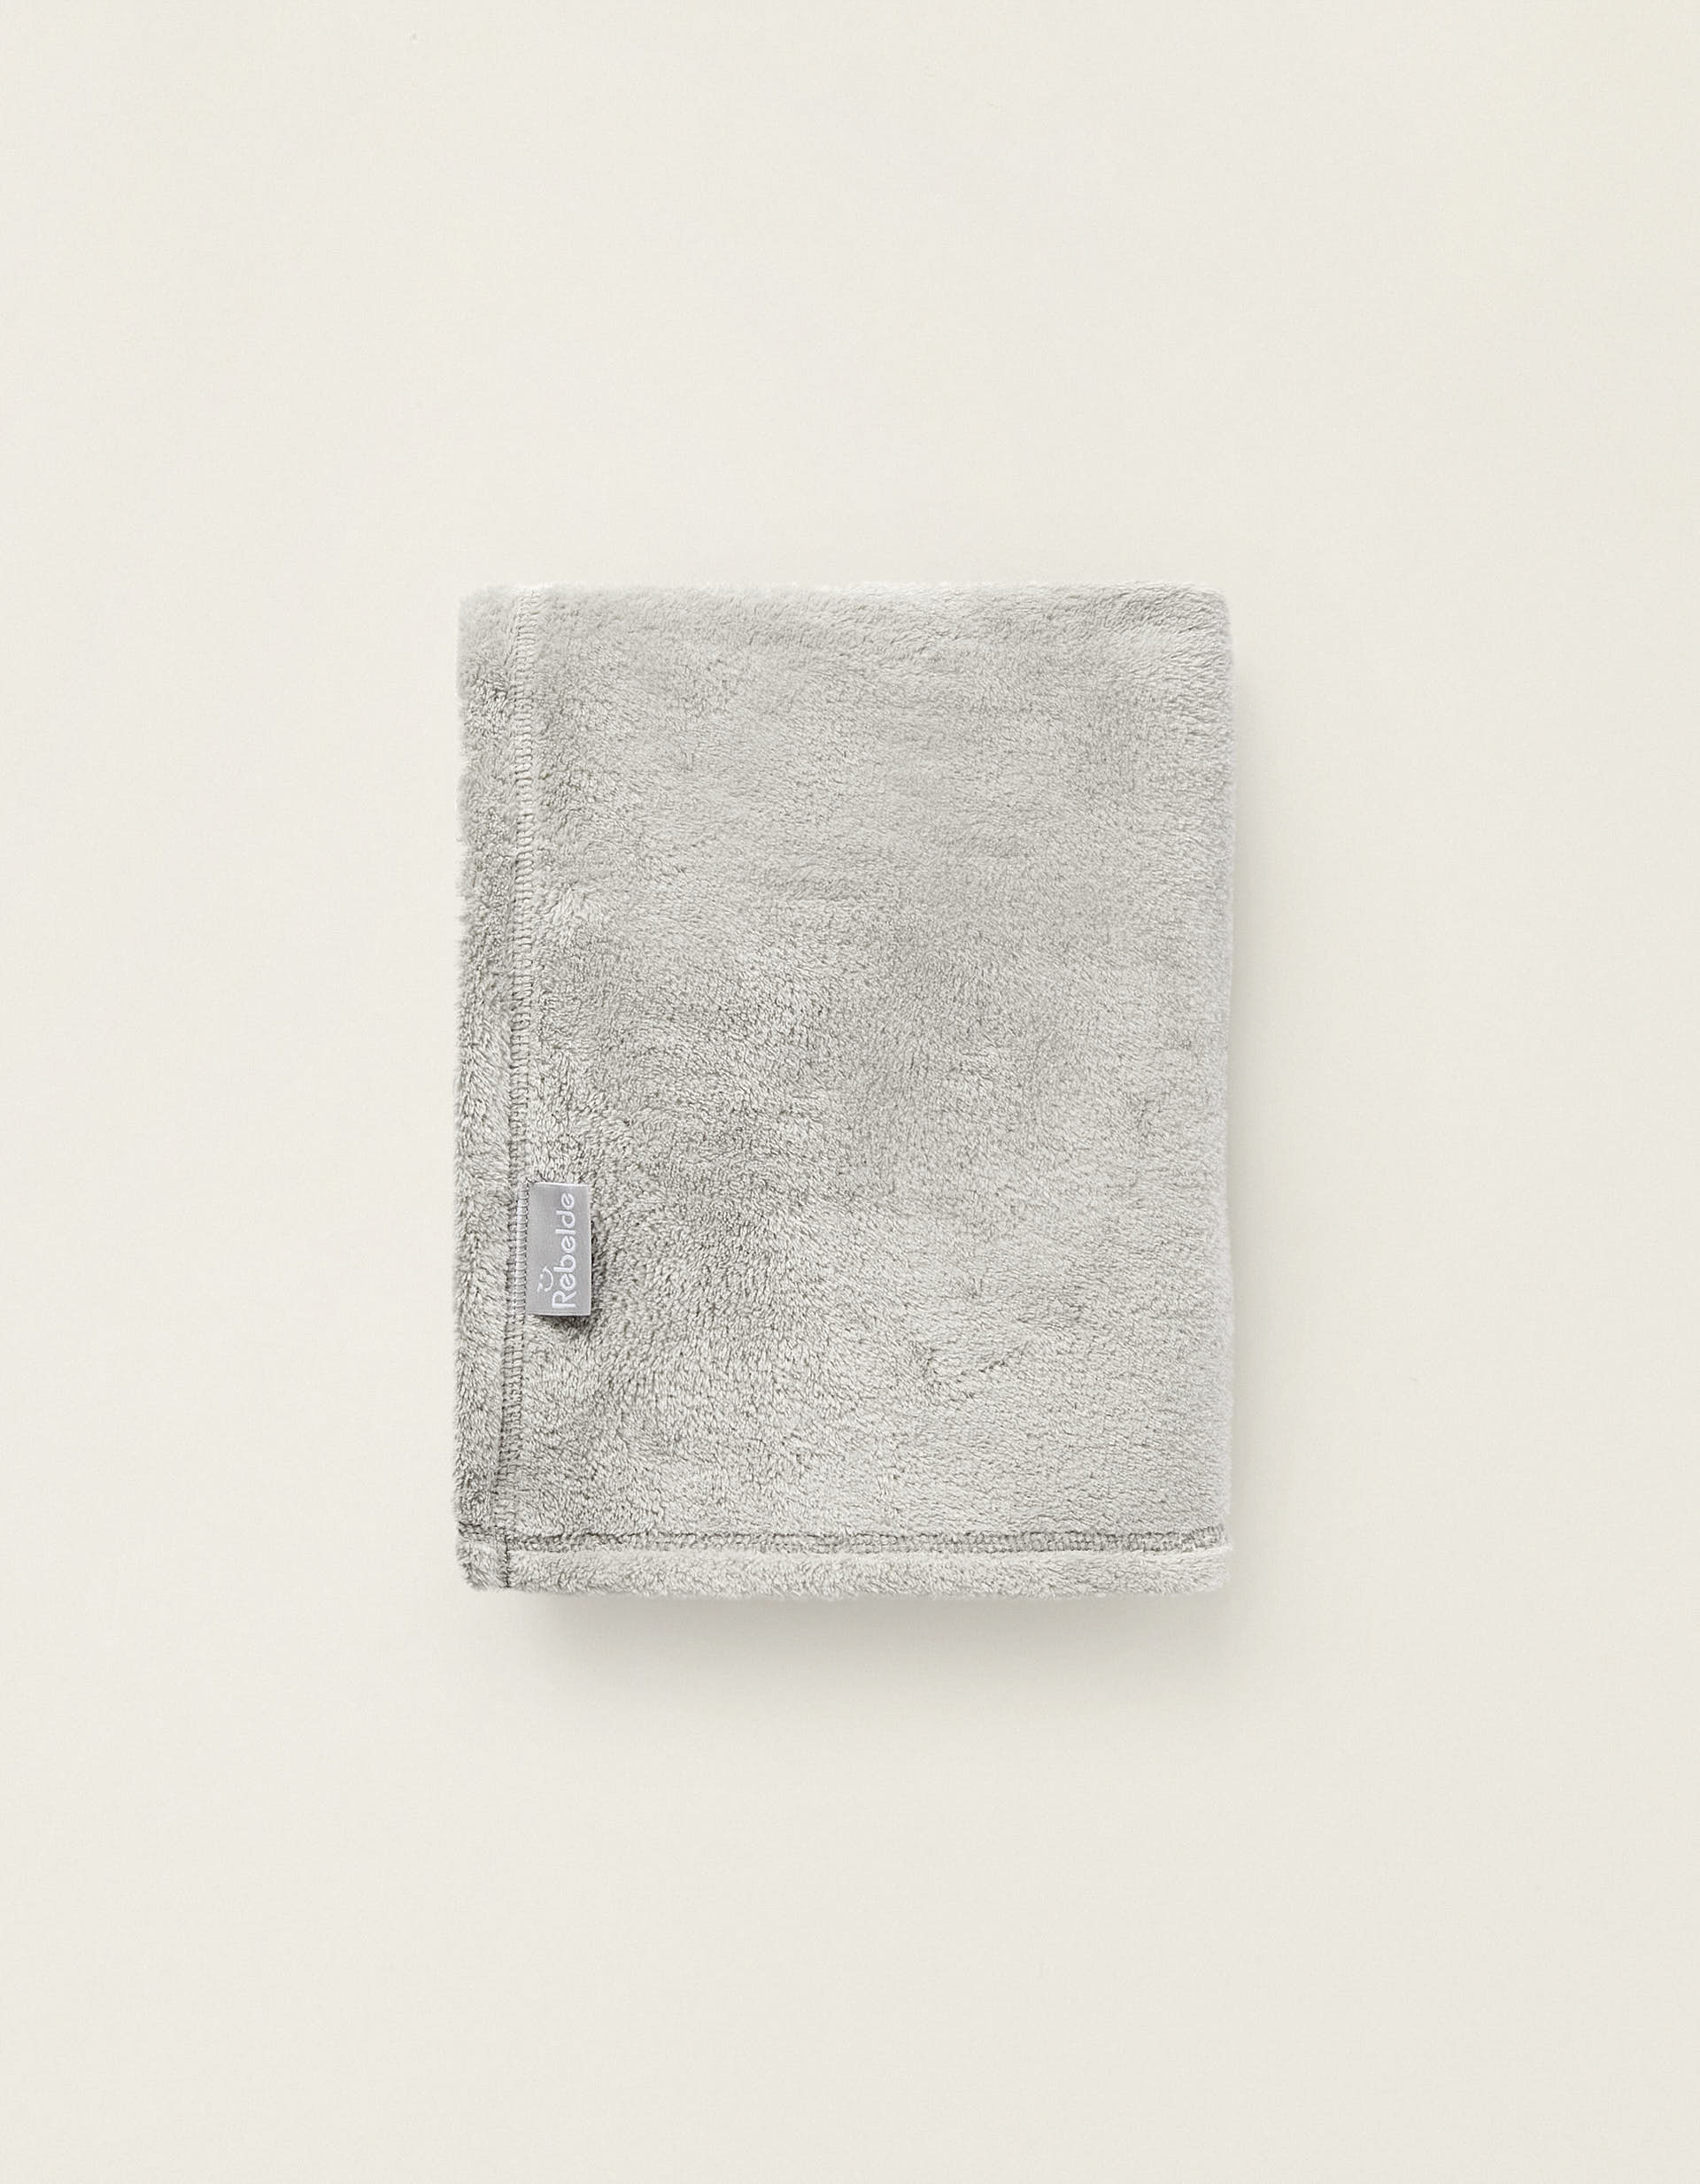 Silver Moon Polar Fleece Blanket 90X75cm by Rebelde, Assorted